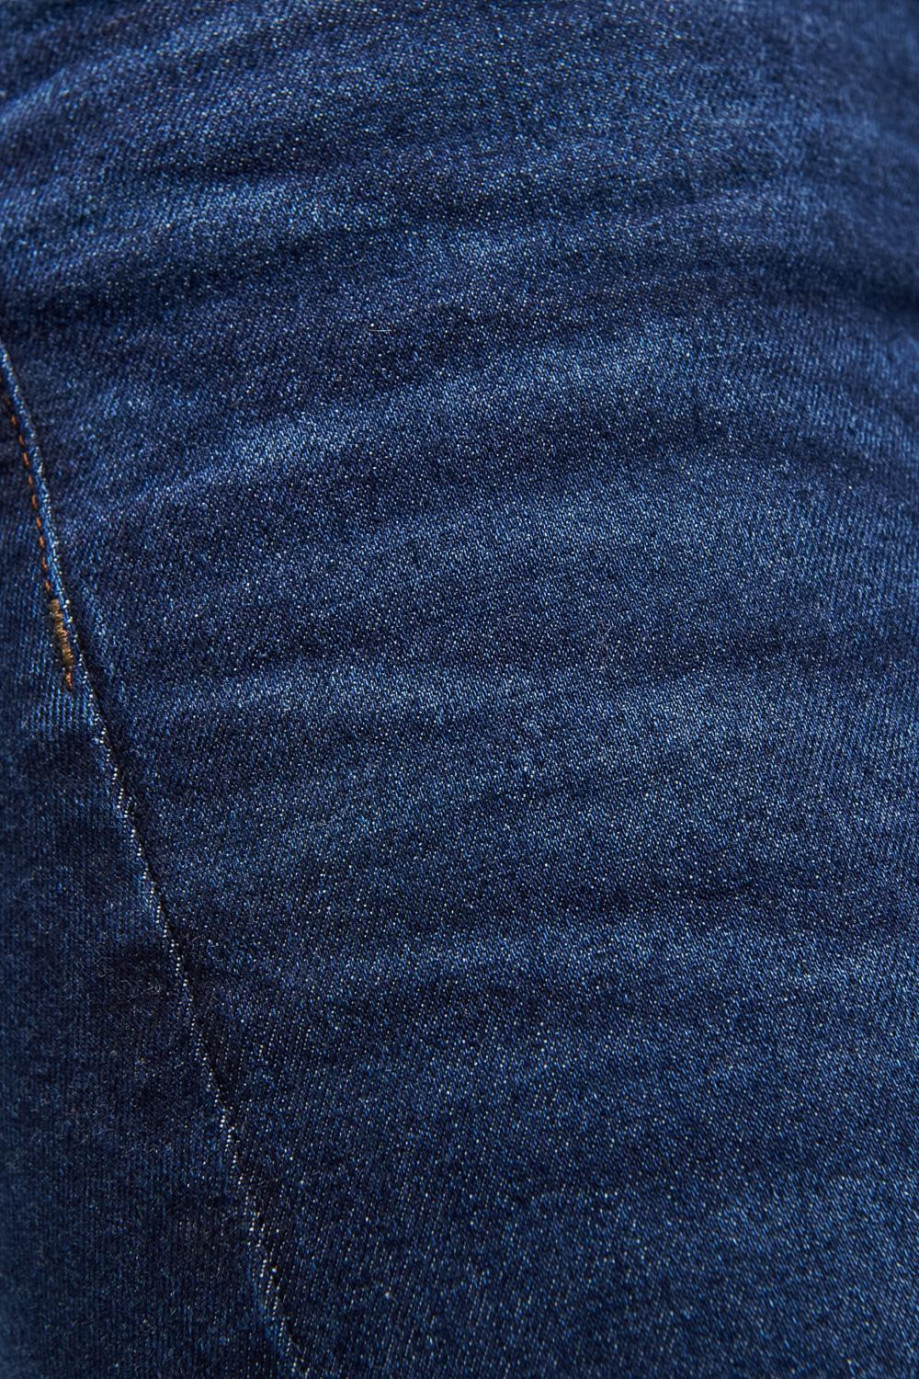 Jean súper skinny tiro bajo azul intenso con costuras cafés en contraste